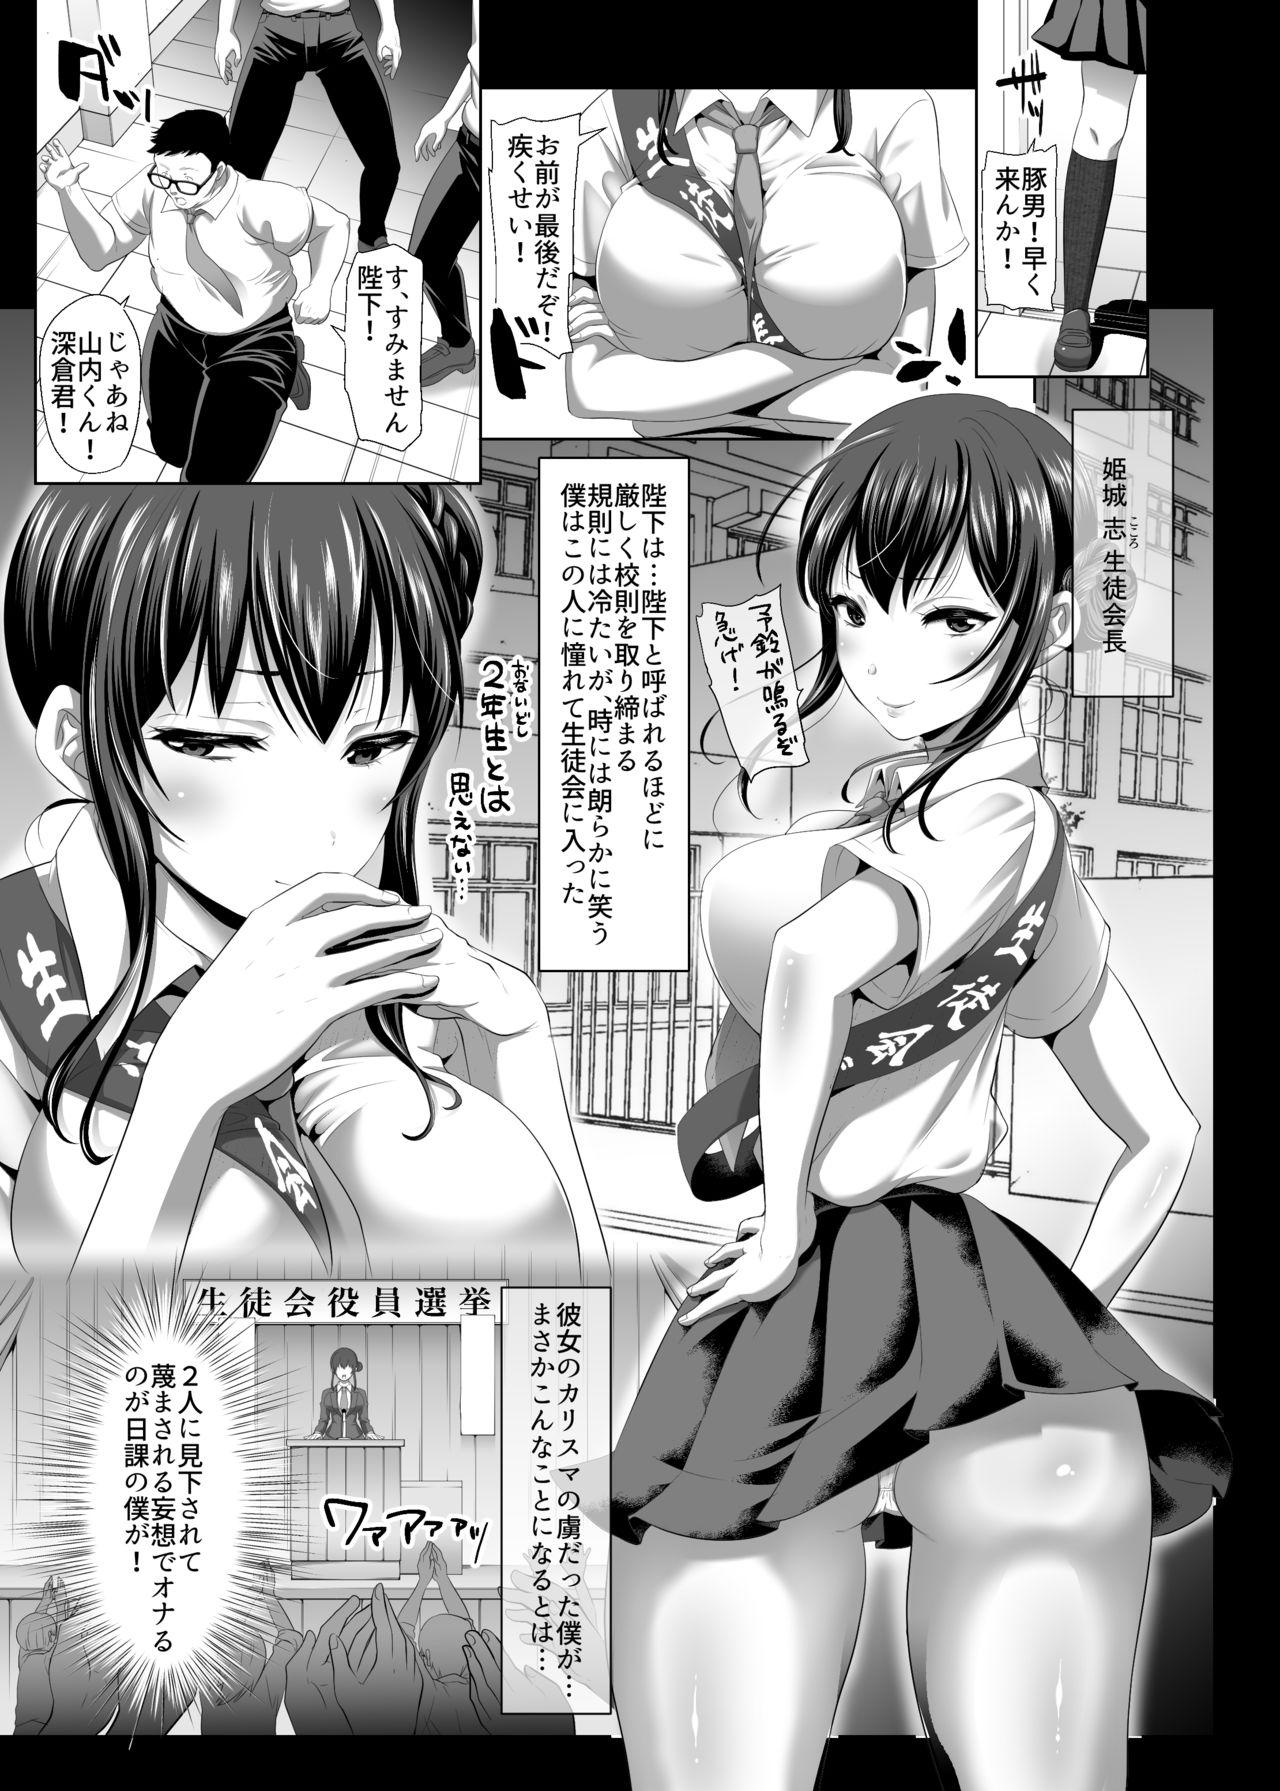 Juicy Herikudarasetekudasai, Butaosama. - Original Gay Pawn - Page 4